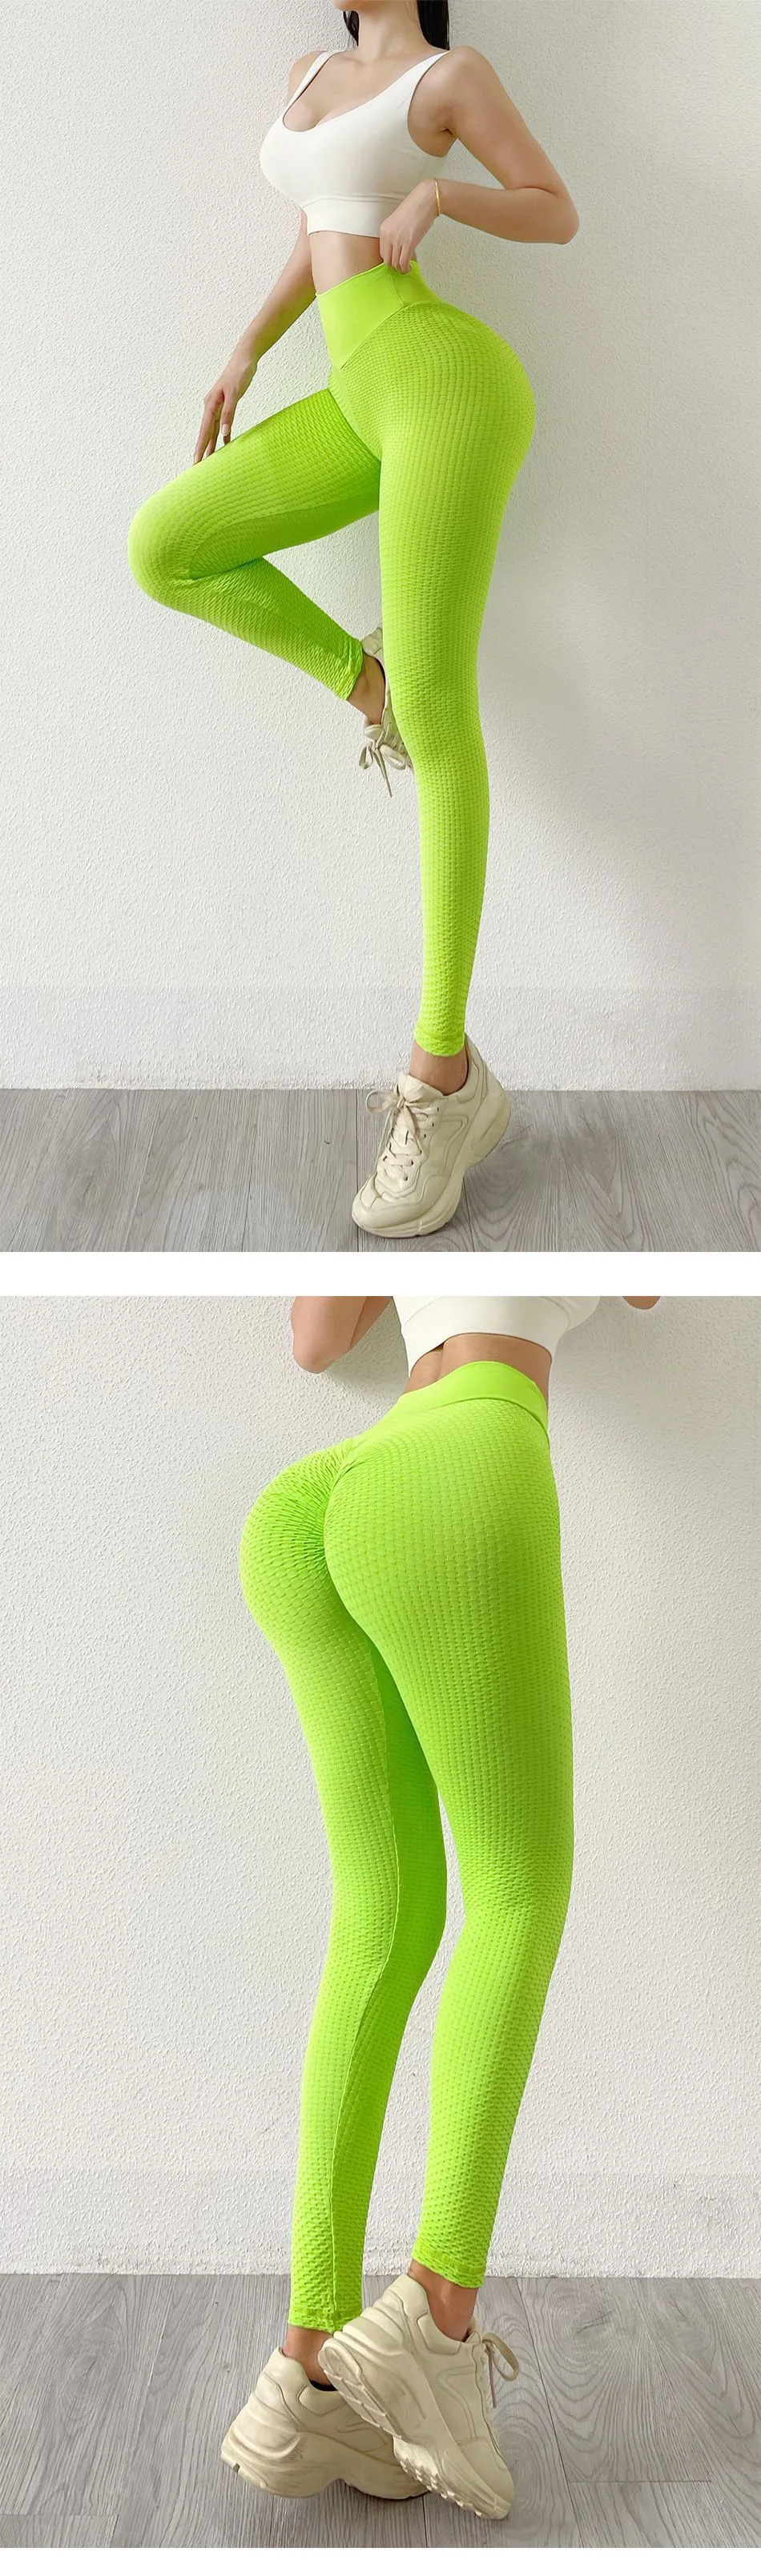 XELORNA Womens Yoga Golf Pants Stretchy Skinny Leggings Work